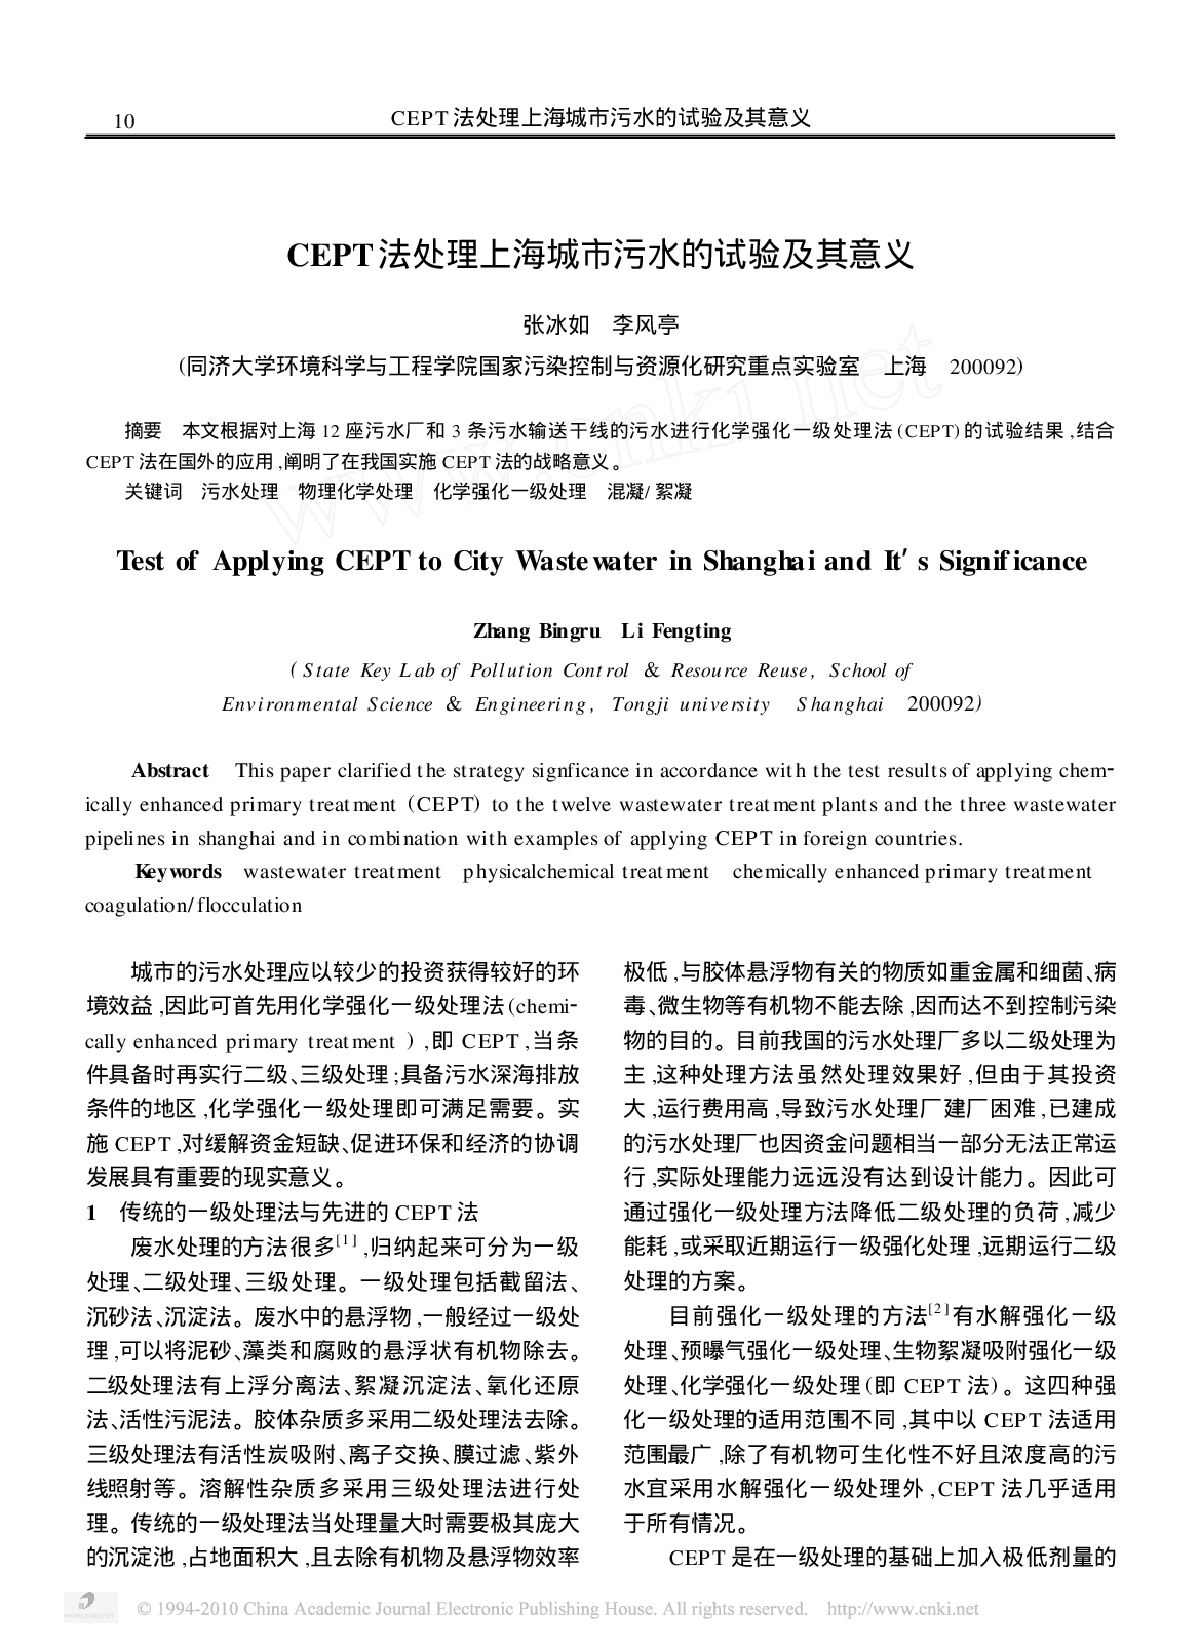 CEPT法处理上海城市污水的试验及其意义